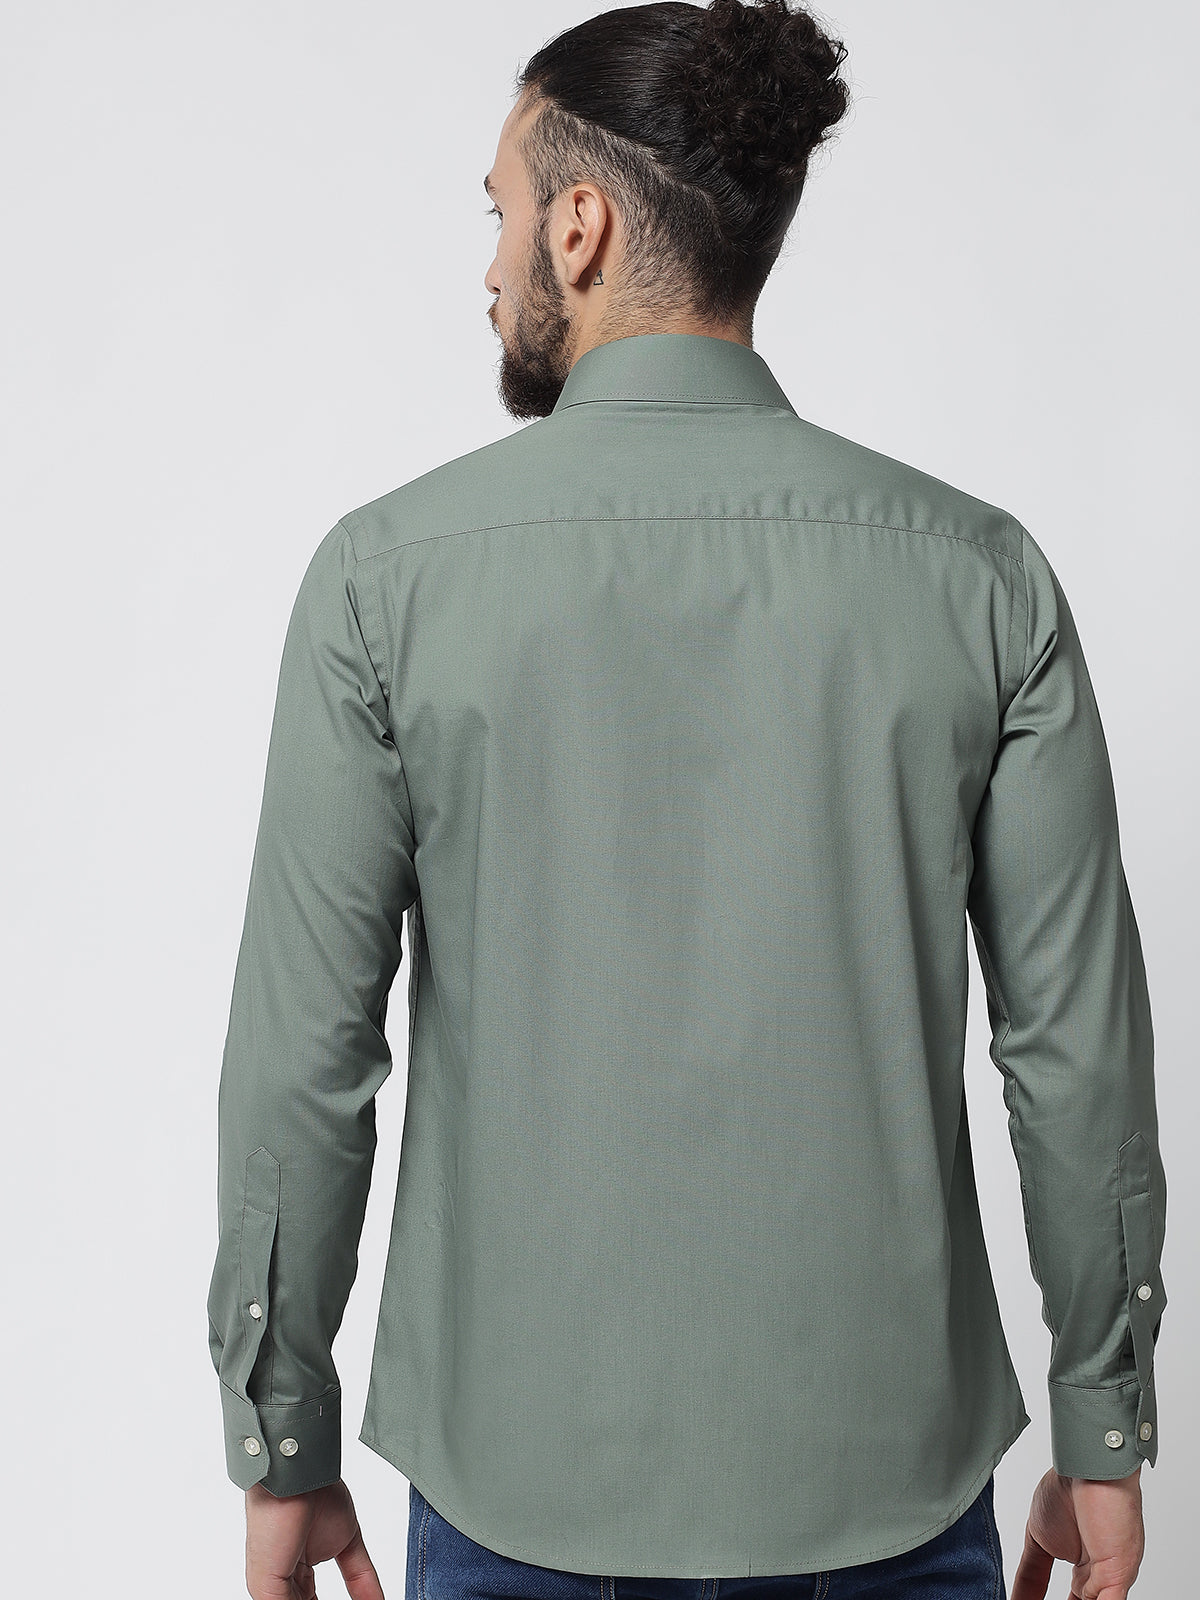 Sage Green Colour Cotton Shirt For Men M|40